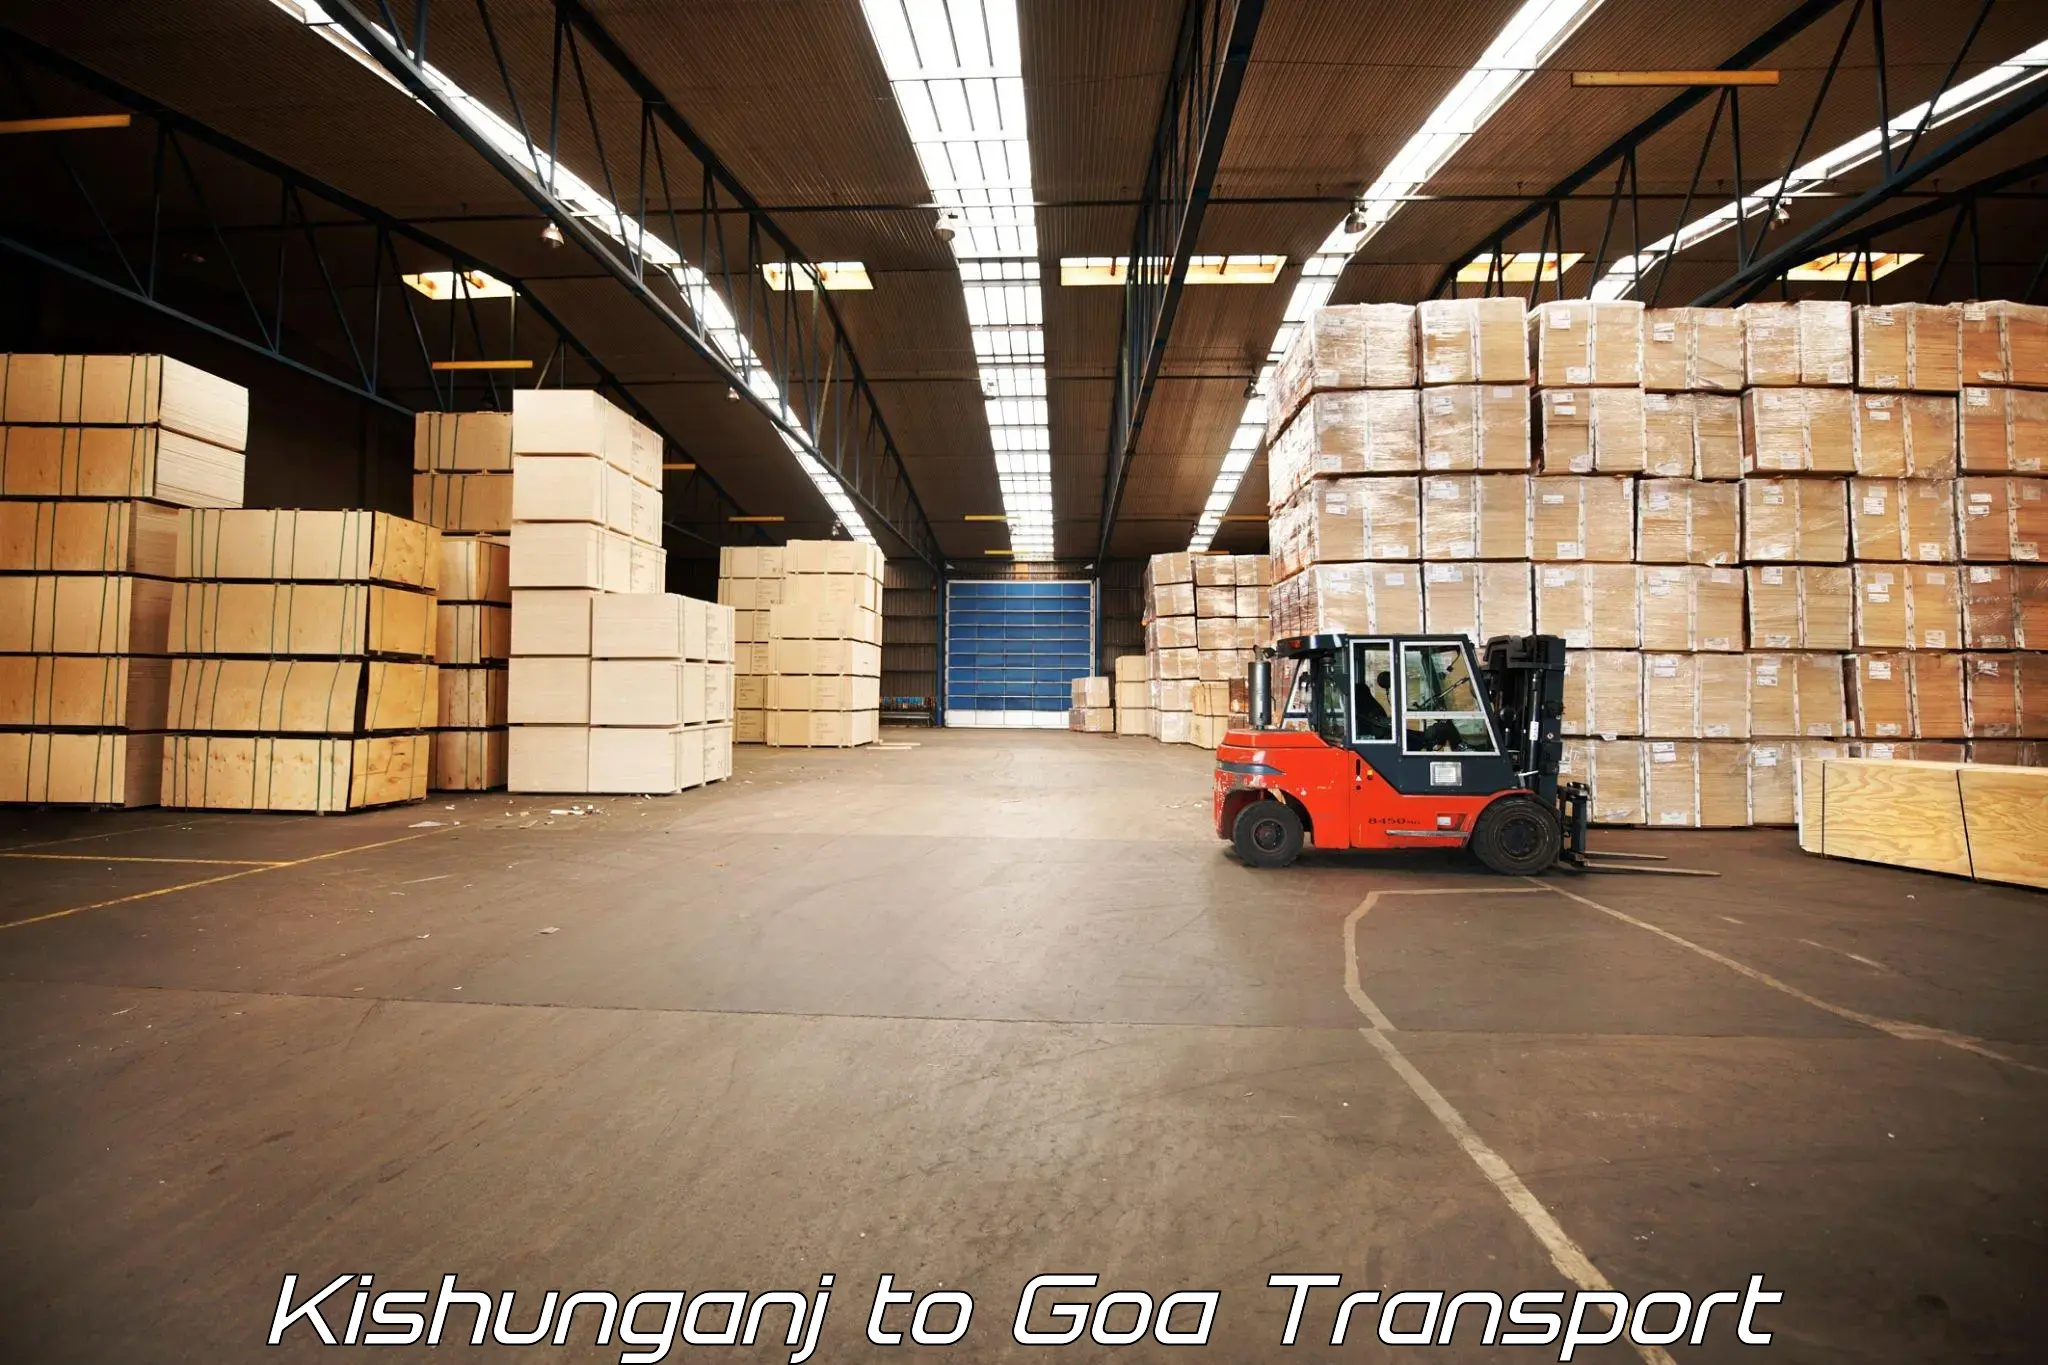 Logistics transportation services Kishunganj to Vasco da Gama